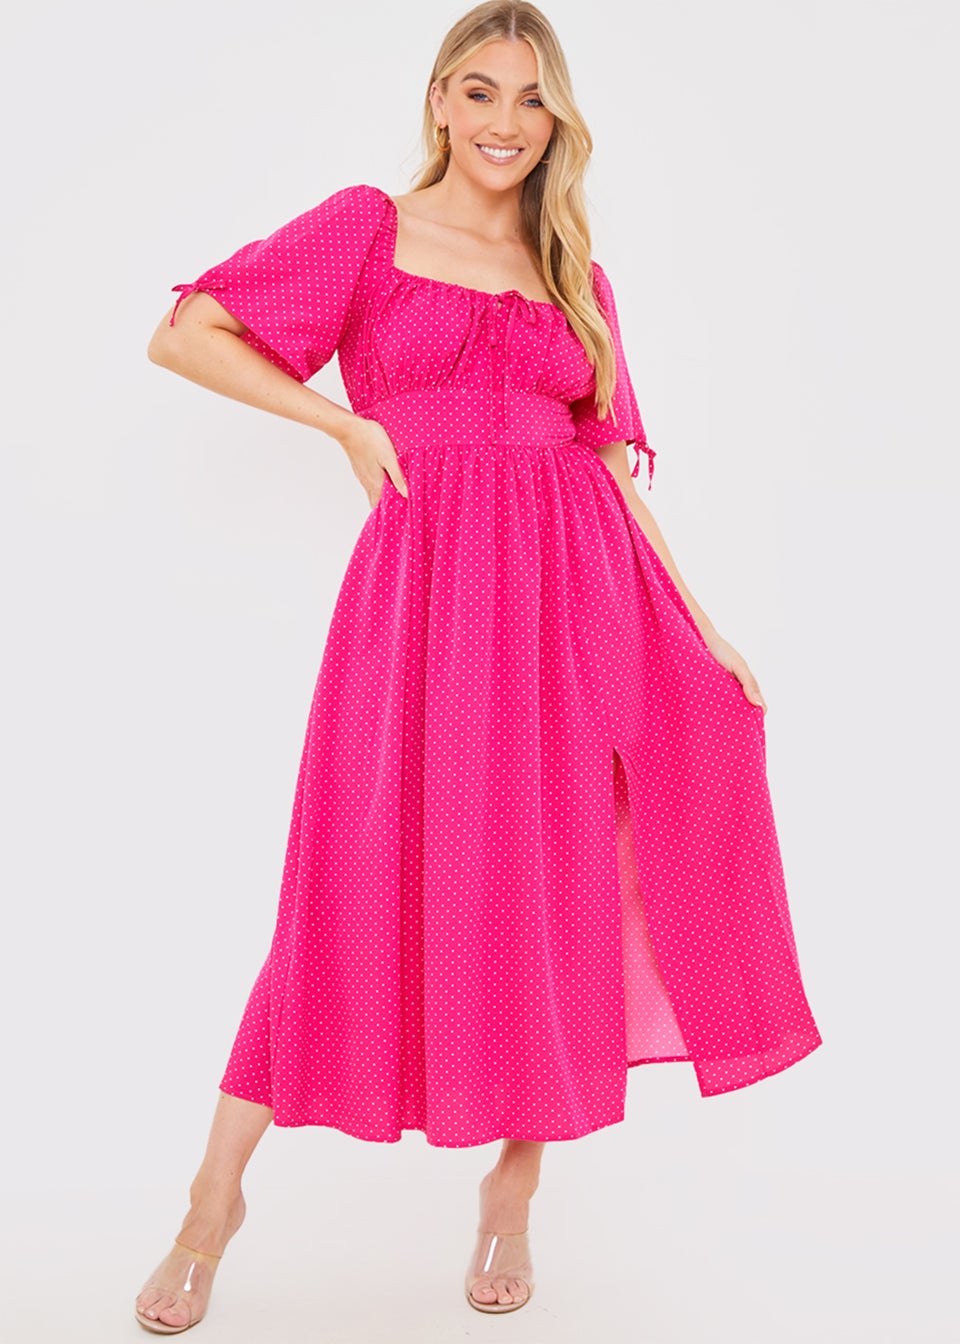 In the Style Jac Jossa Pink Polka Dot Midi Dress - Matalan